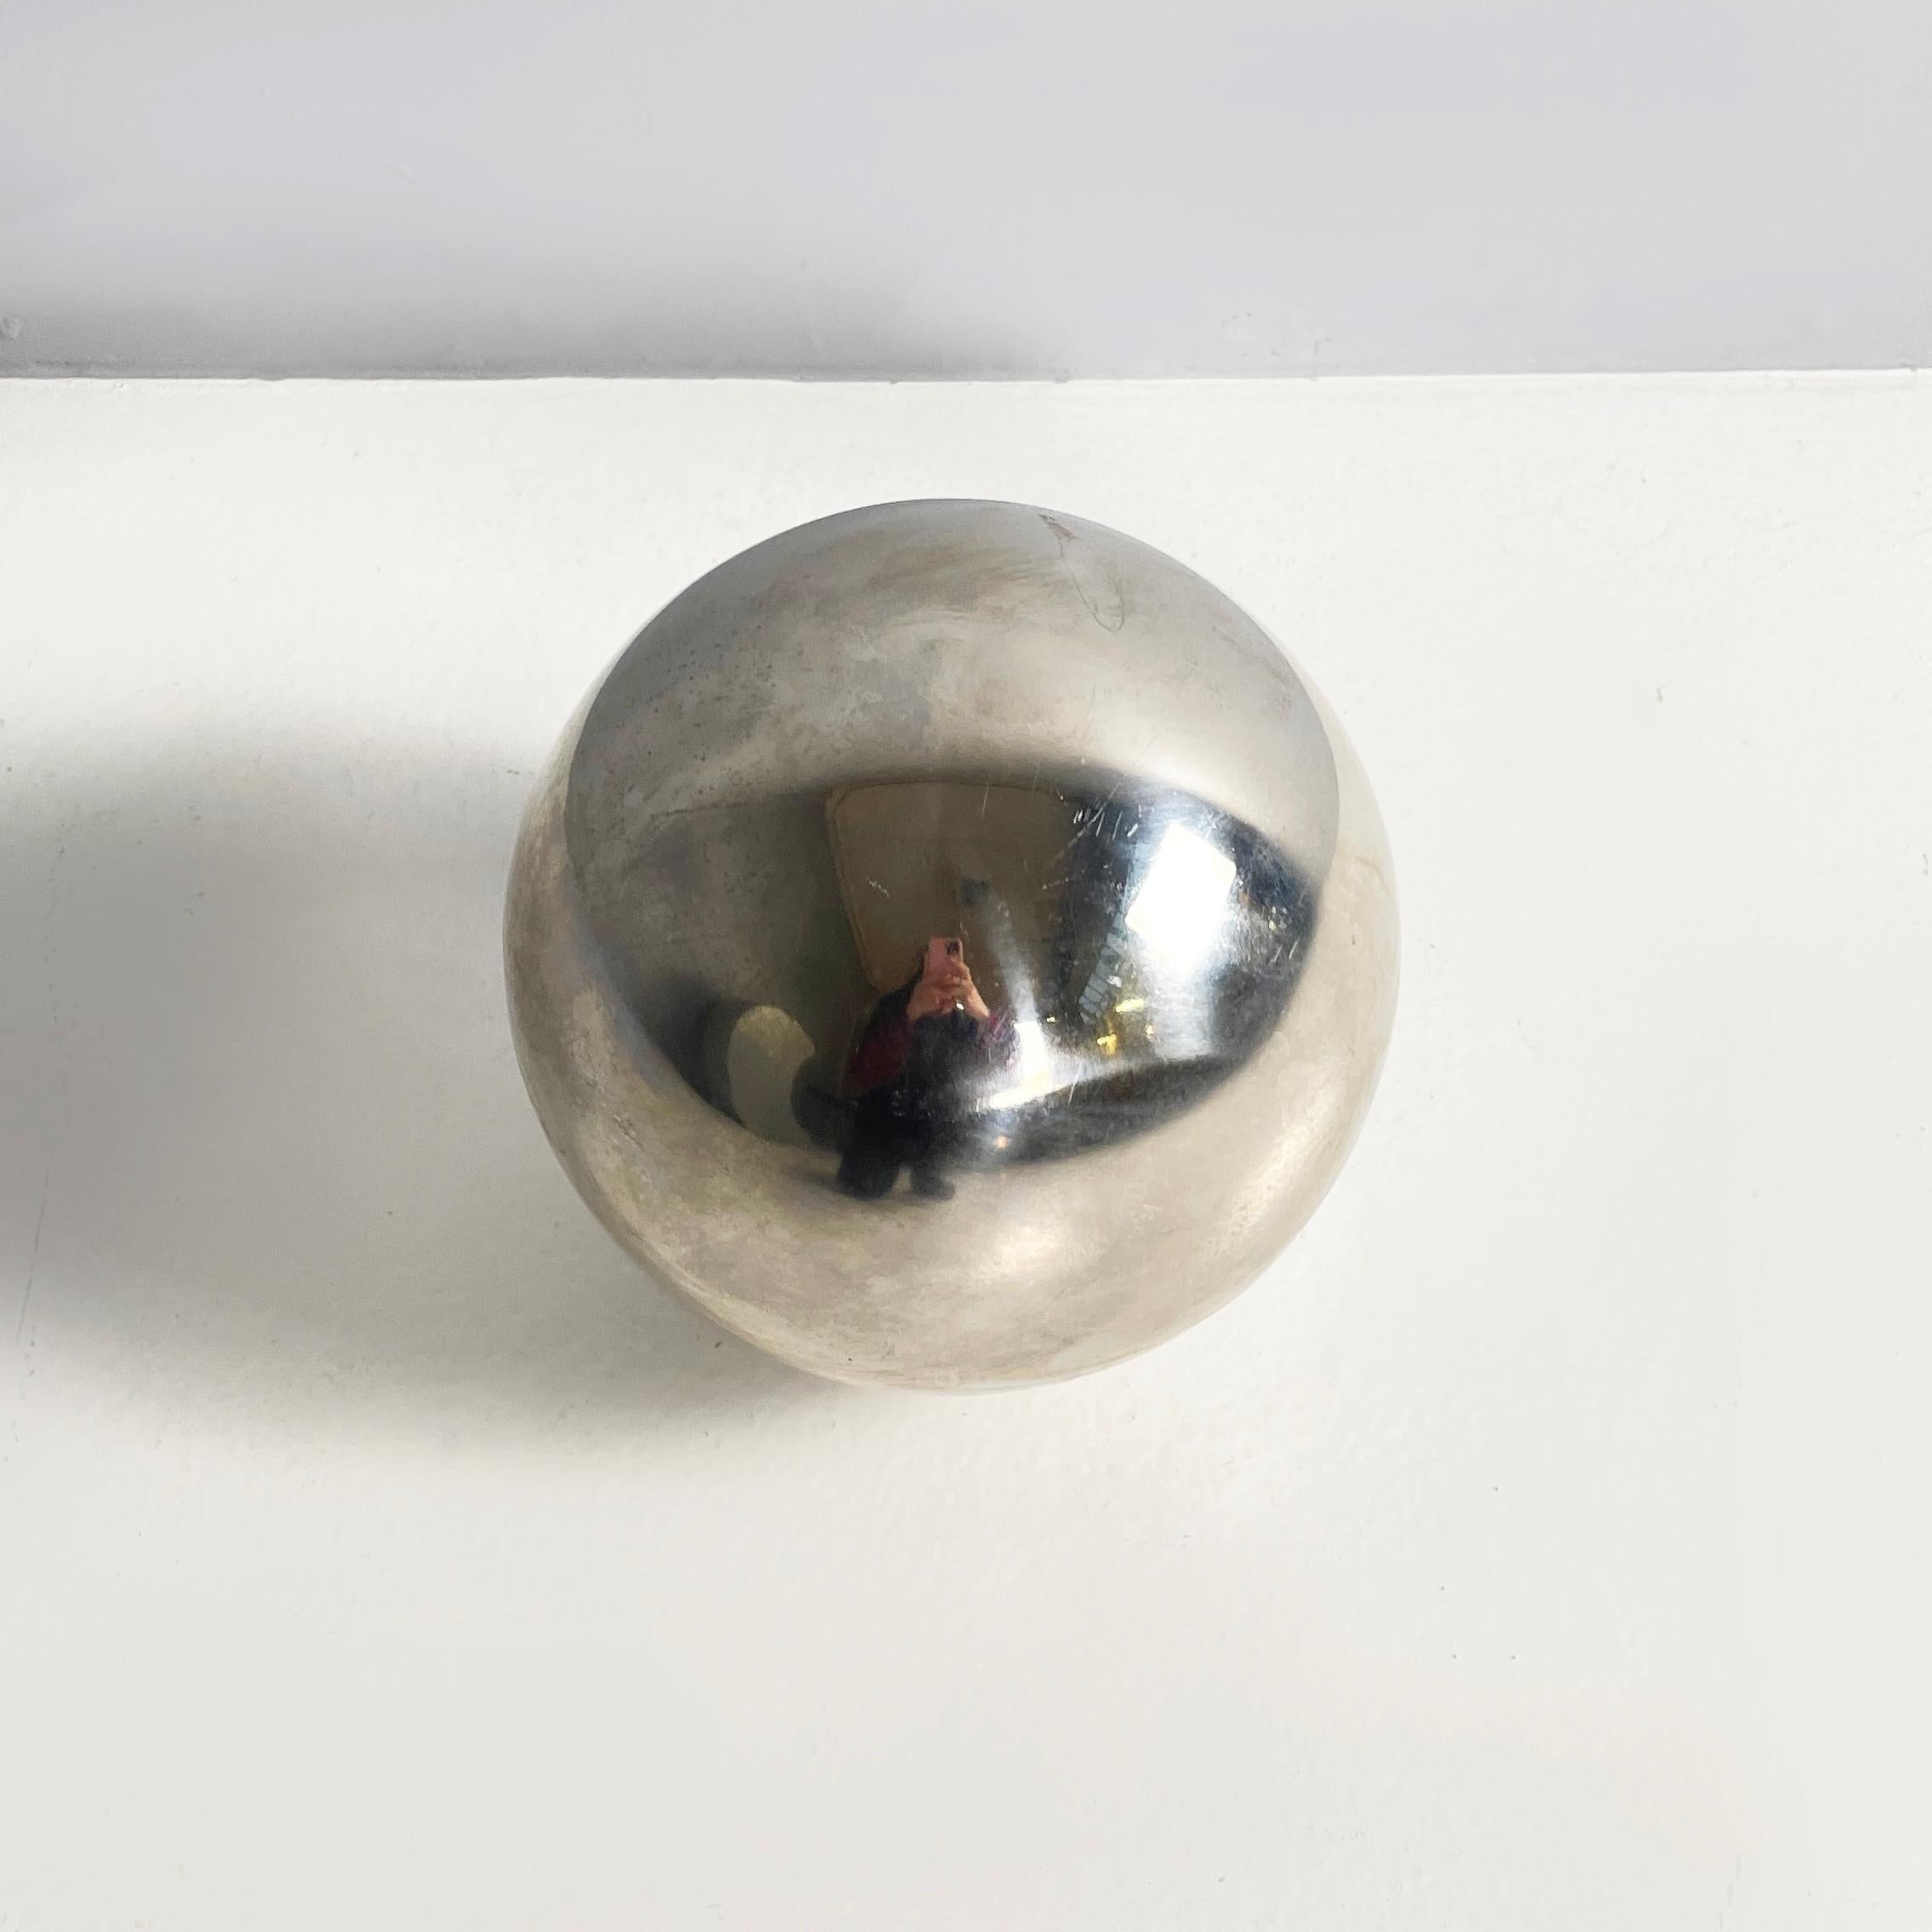 Sphère décorative en métal, 1990
Sphère décorative en métal.
1990 environ.
Condition Vintage, il a des signes épars de l'âge.
Dimensions en cm 21x21h
Cet élégant ornement est parfait pour être placé sur le fauteuil à l'entrée, dans le salon ou dans